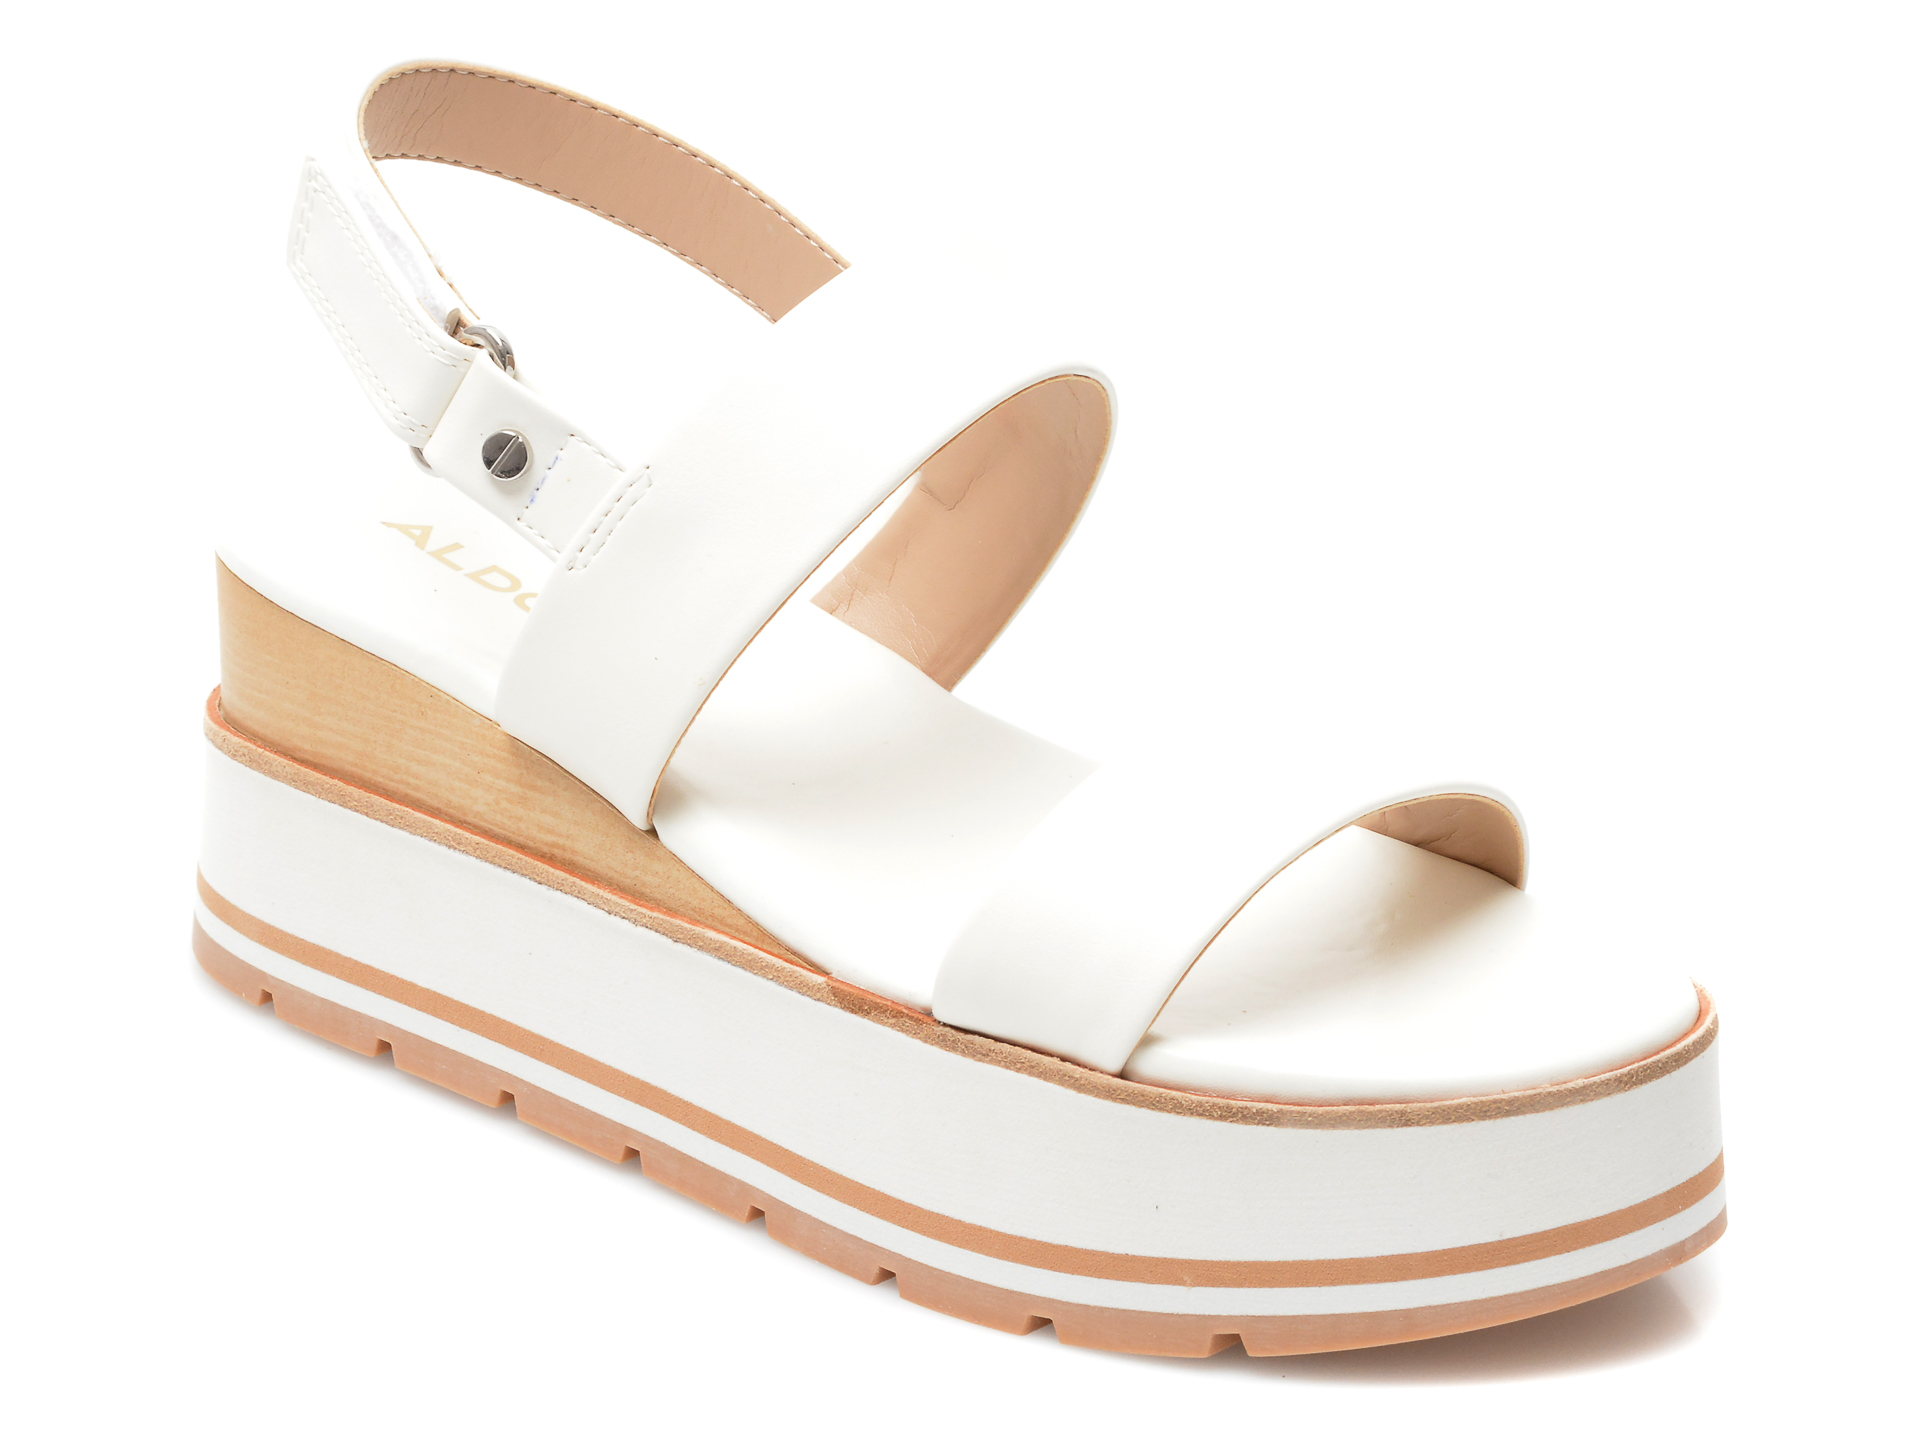 Sandale ALDO albe, Onalisa100, din piele ecologica Aldo